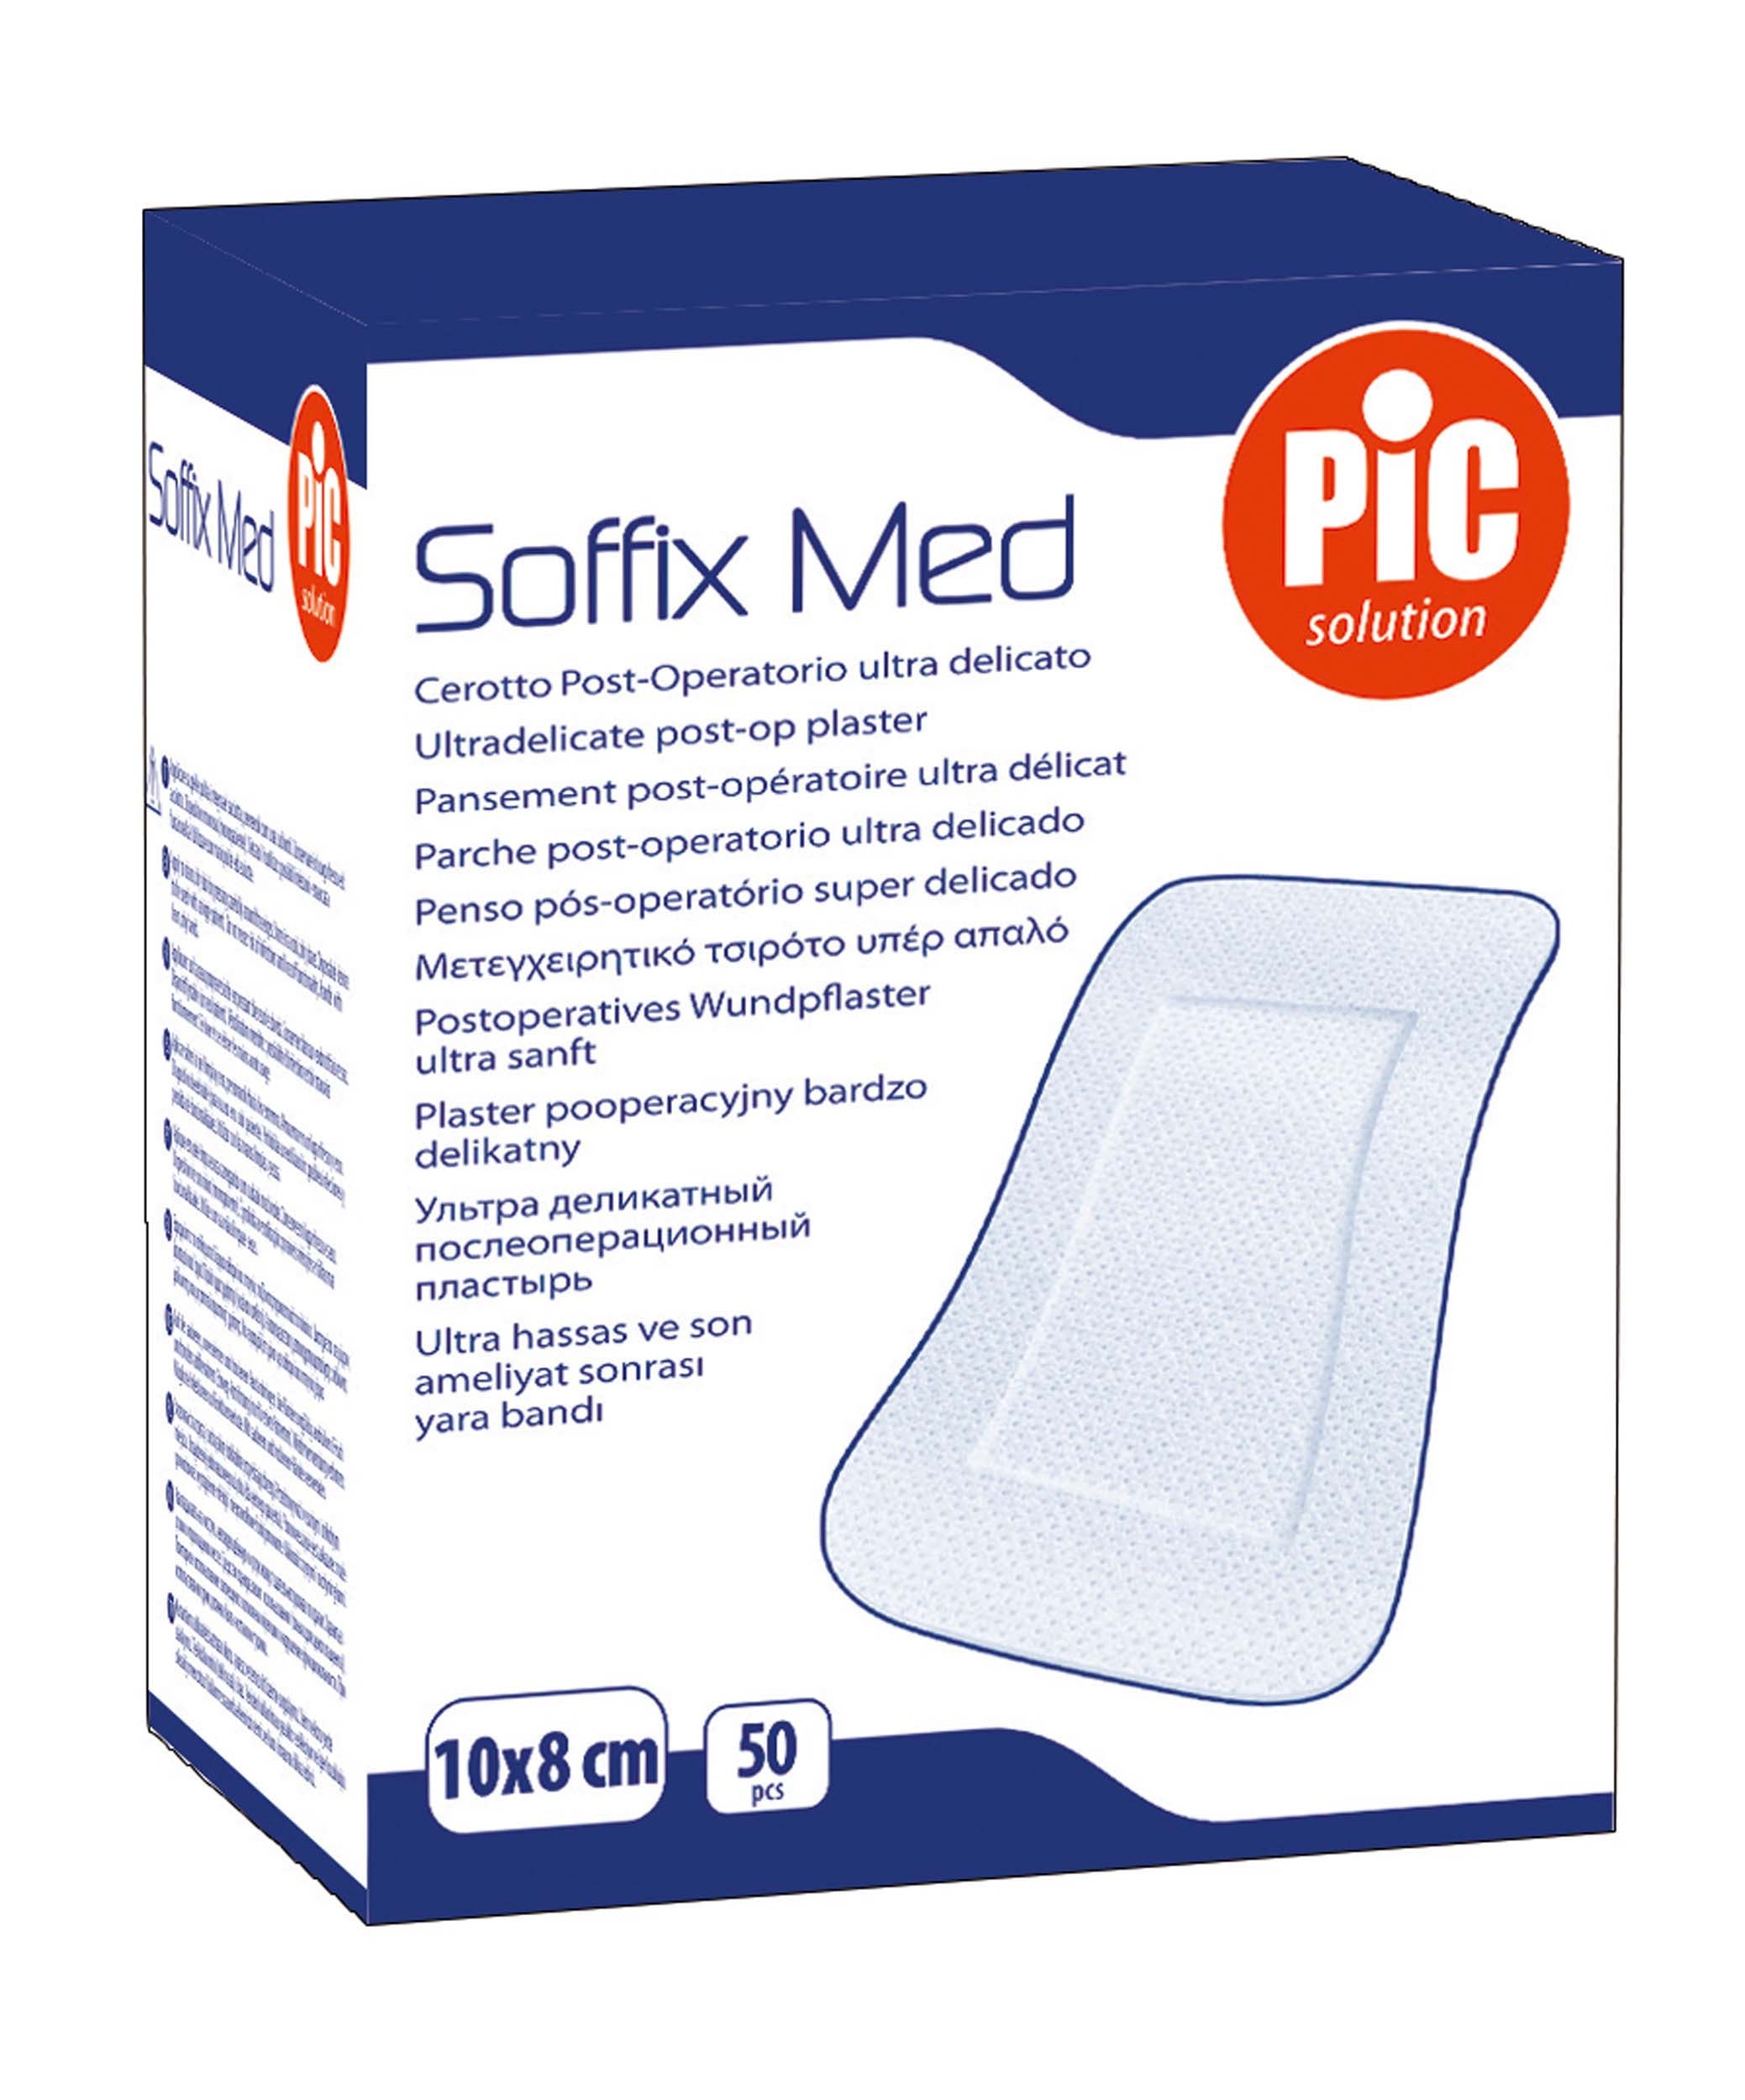 Pansements adhésifs Soffix Med - 4 dimensions - Pic Solution